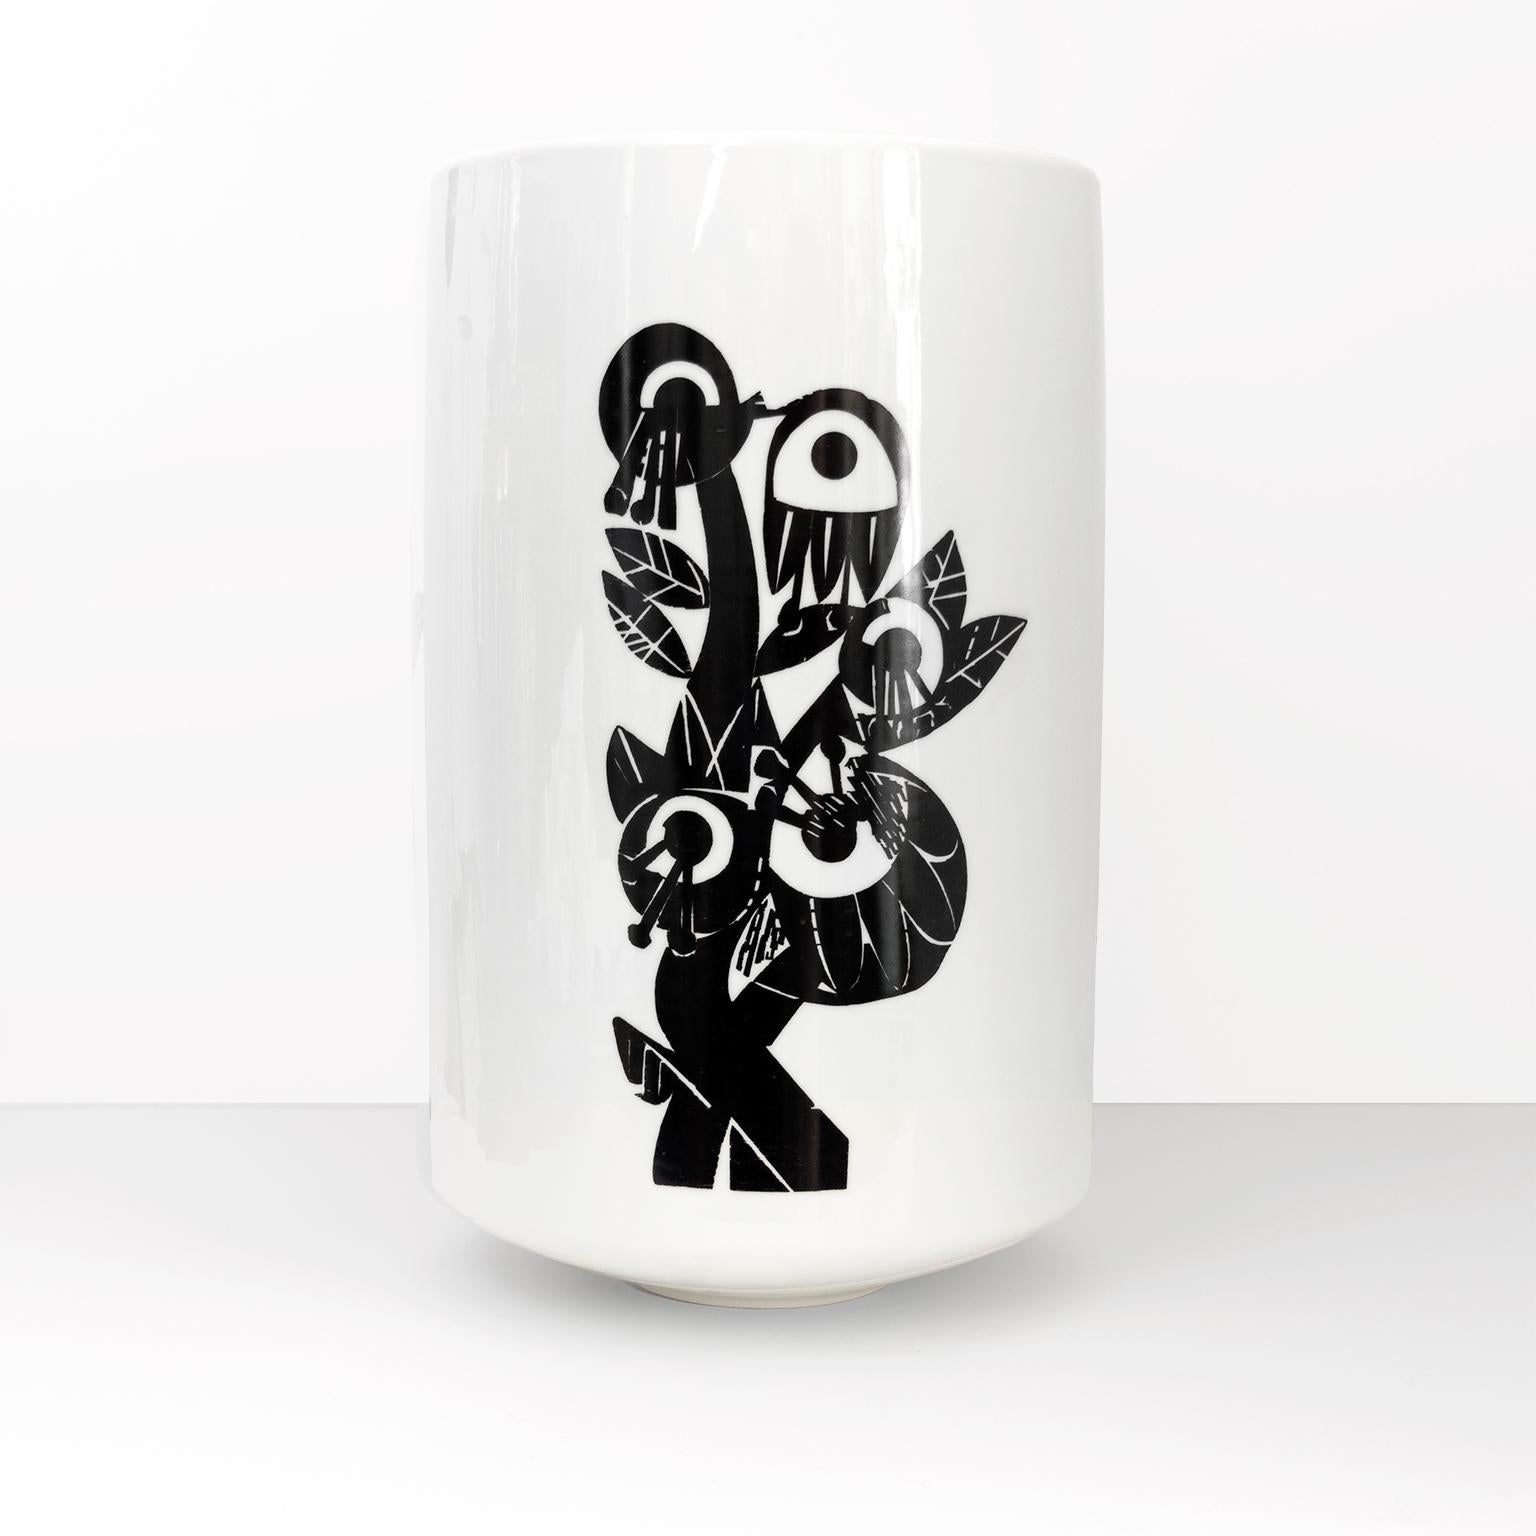 German H&G Selb Heinrich Large Artistic Modernist Porcelain Vase with Figures For Sale